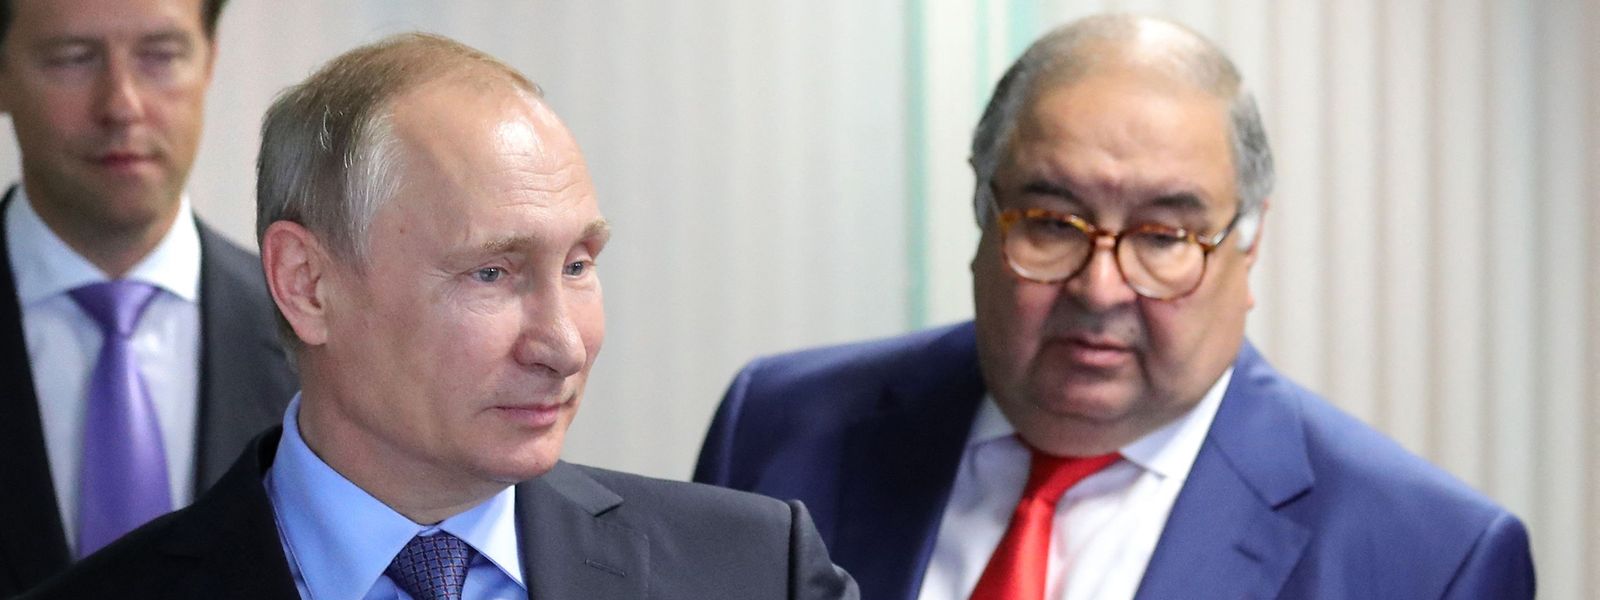 Os alvos das novas sanções incluem Alisher Burhanovich Usmanov (atrás de Putin, na foto) um dos homens mais ricos da Rússia e aliado próximo de Putin.